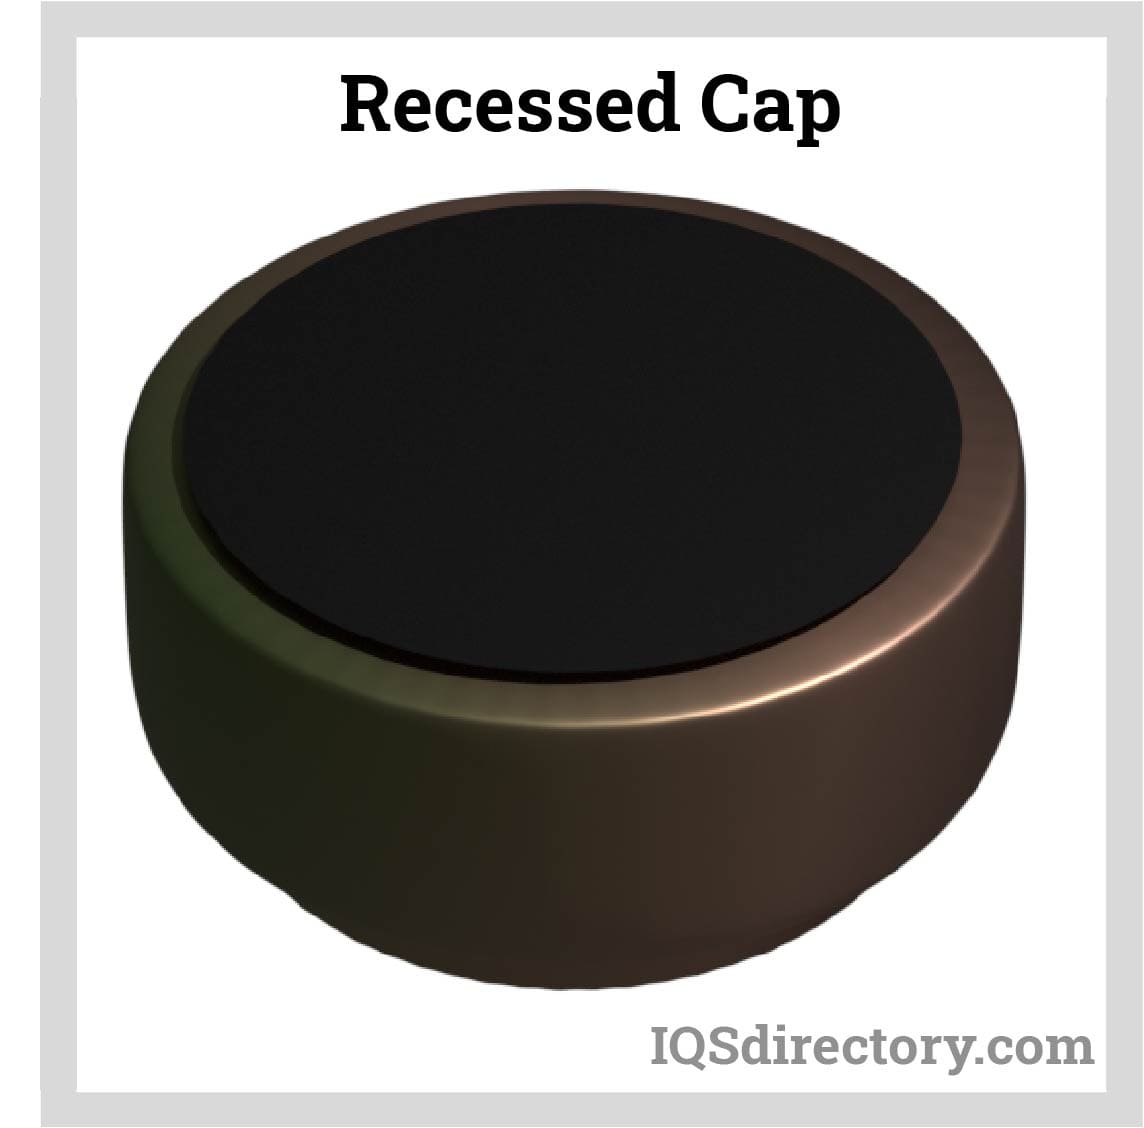 Recessed Cap